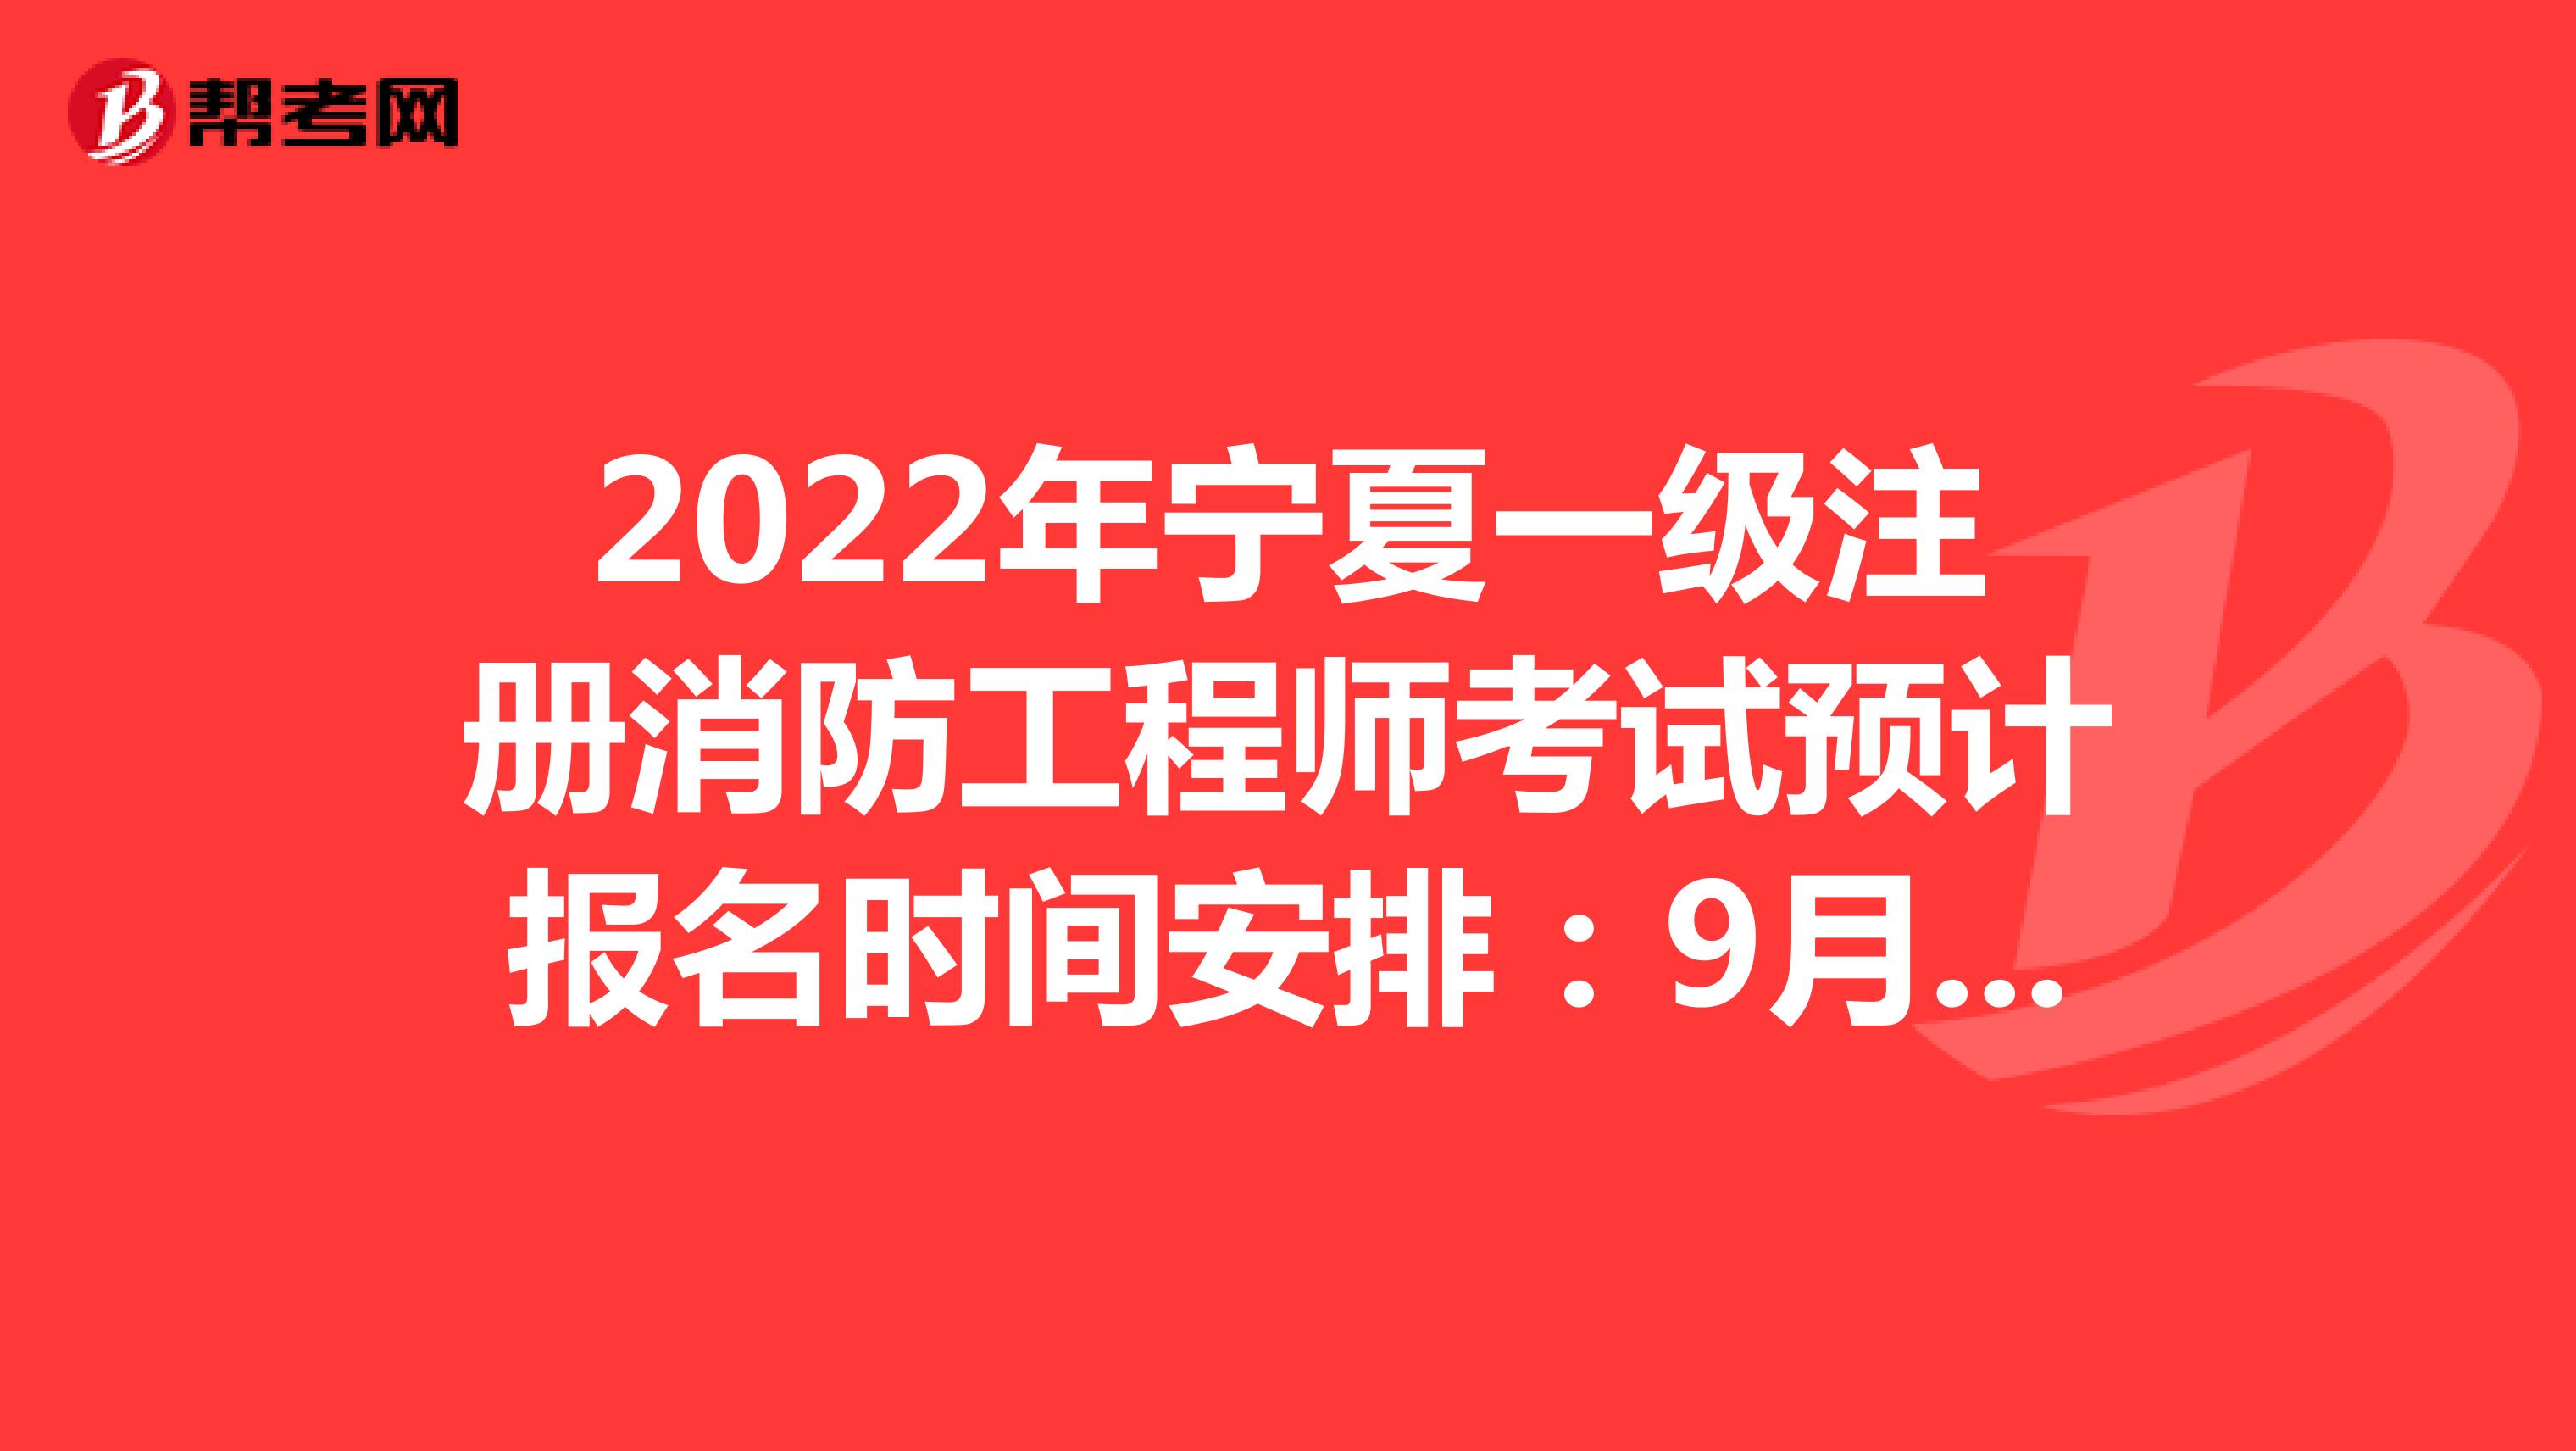 2022年宁夏一级注册消防工程师考试预计报名时间安排：9月2日-9月16日